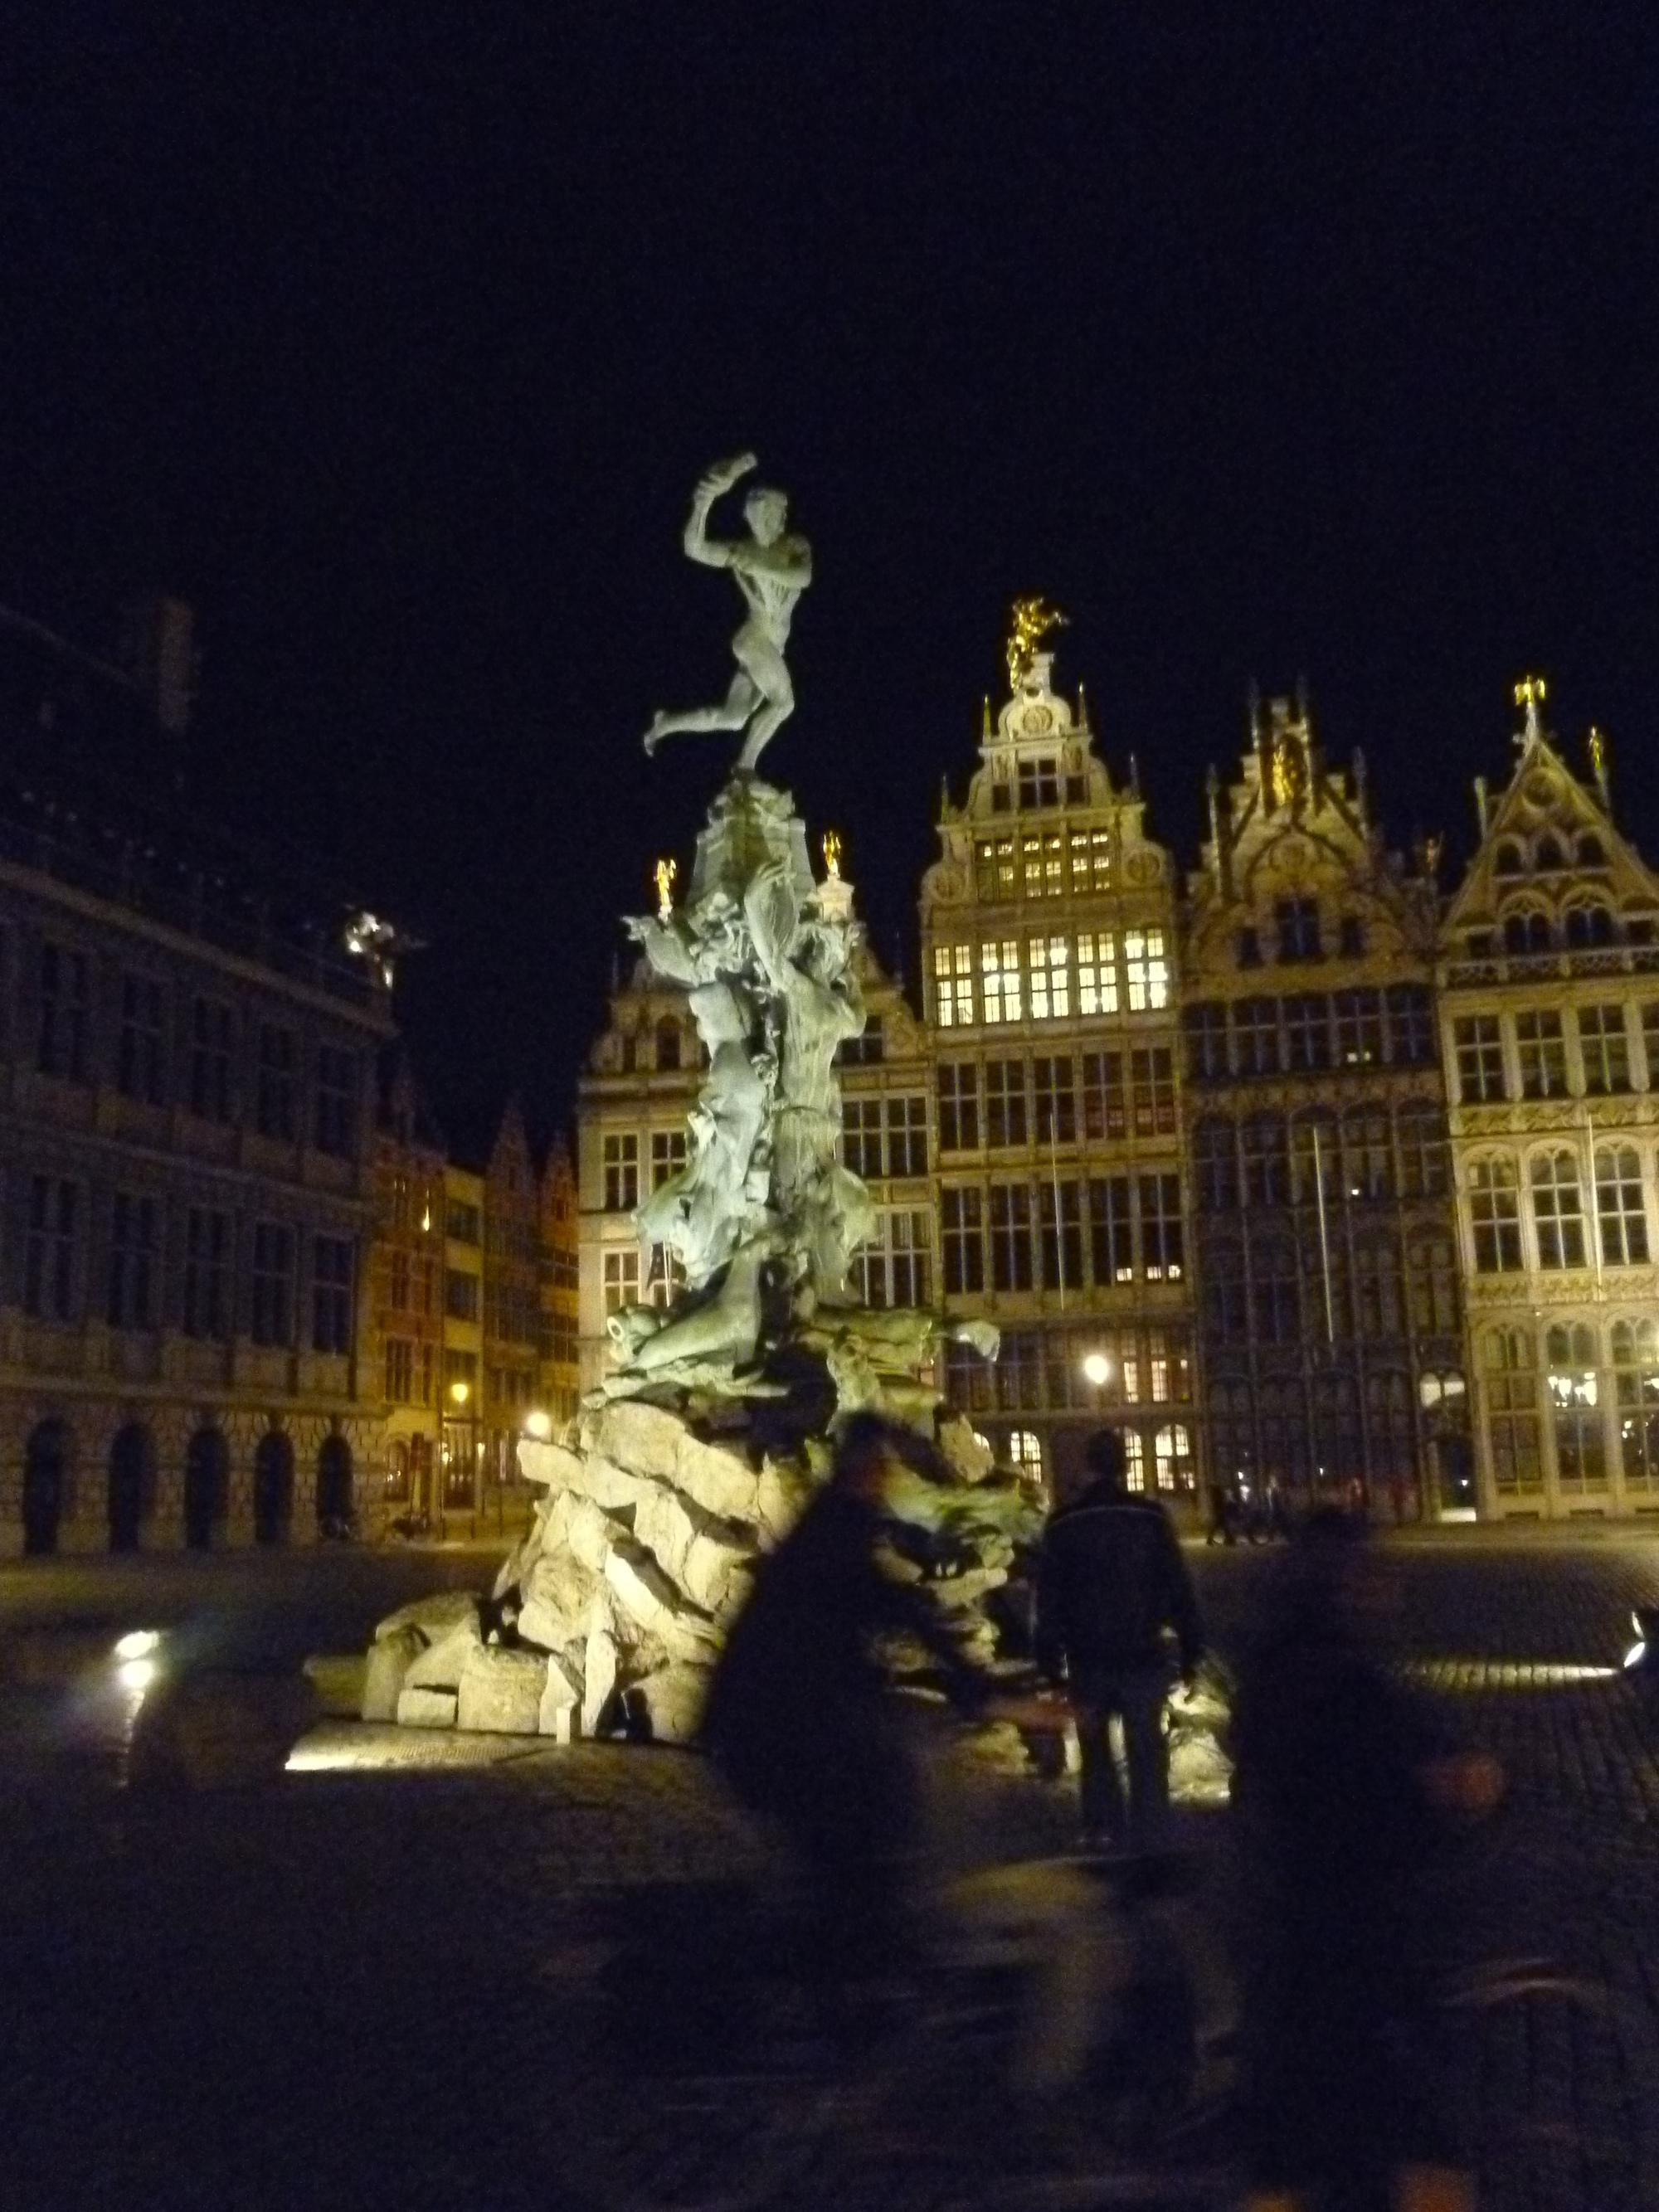 Antwerp - Antwerp